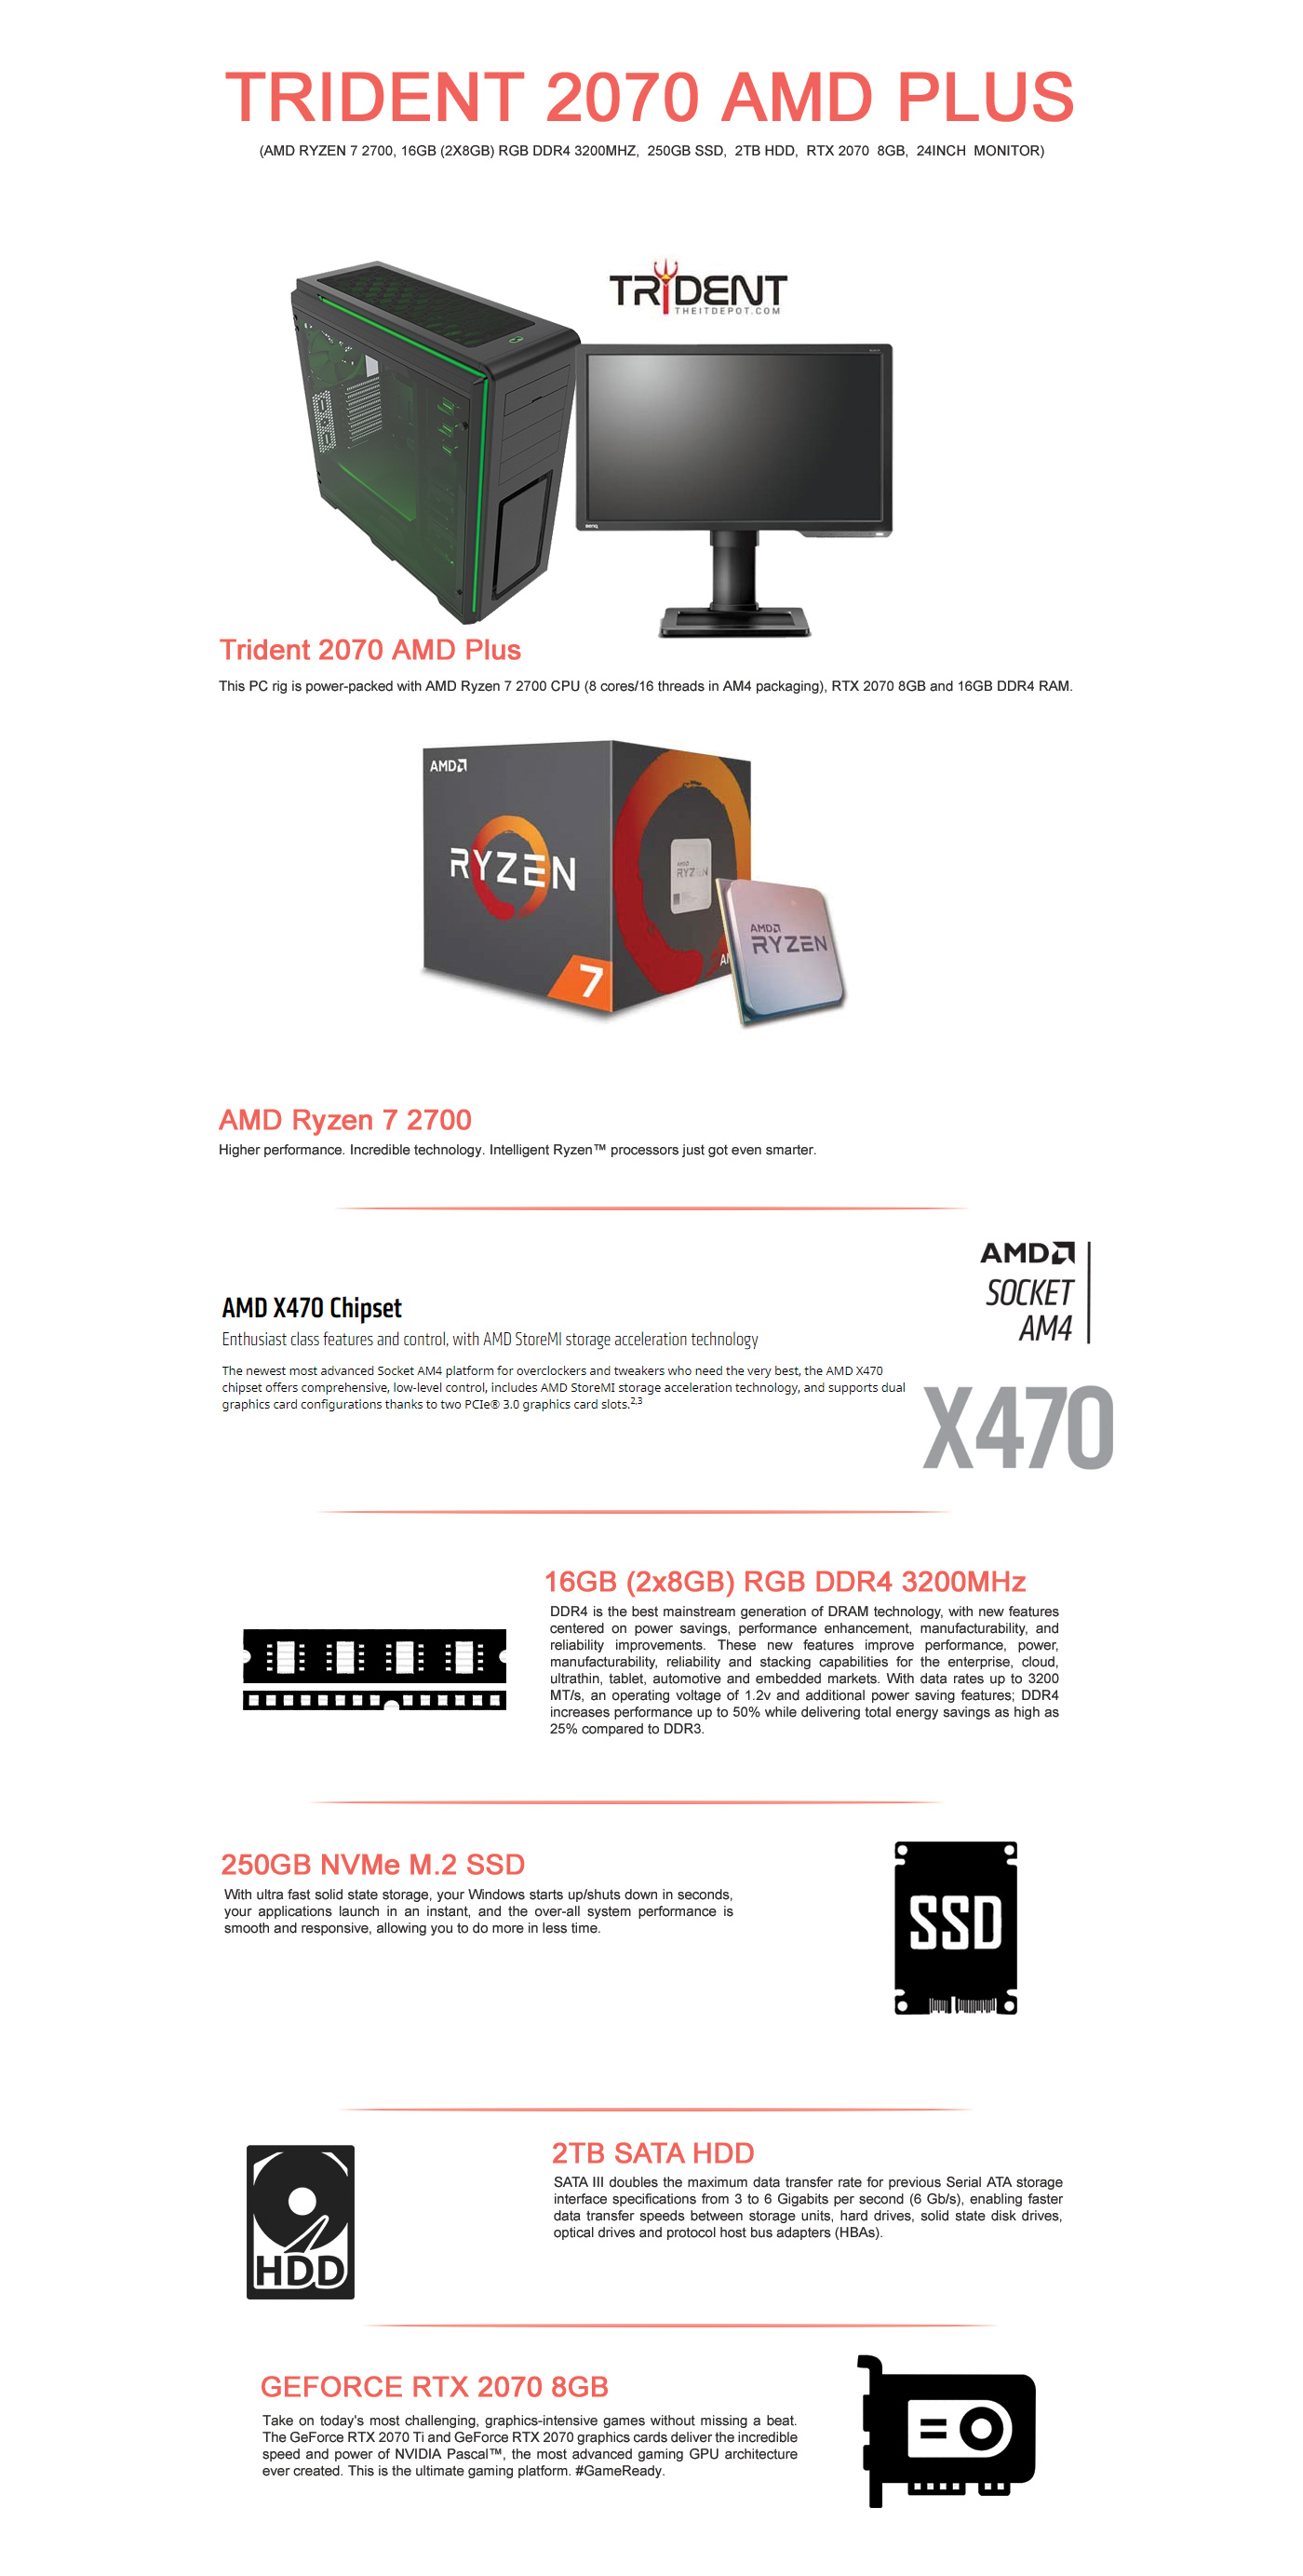  Buy Online Trident 2070  AMD Plus (AMD Ryzen 7 2700, 16GB (2x8GB) RGB DDR4 3200MHz,  250GB SSD,  2TB HDD,  RTX 2070  8GB,  24inch  Monitor)